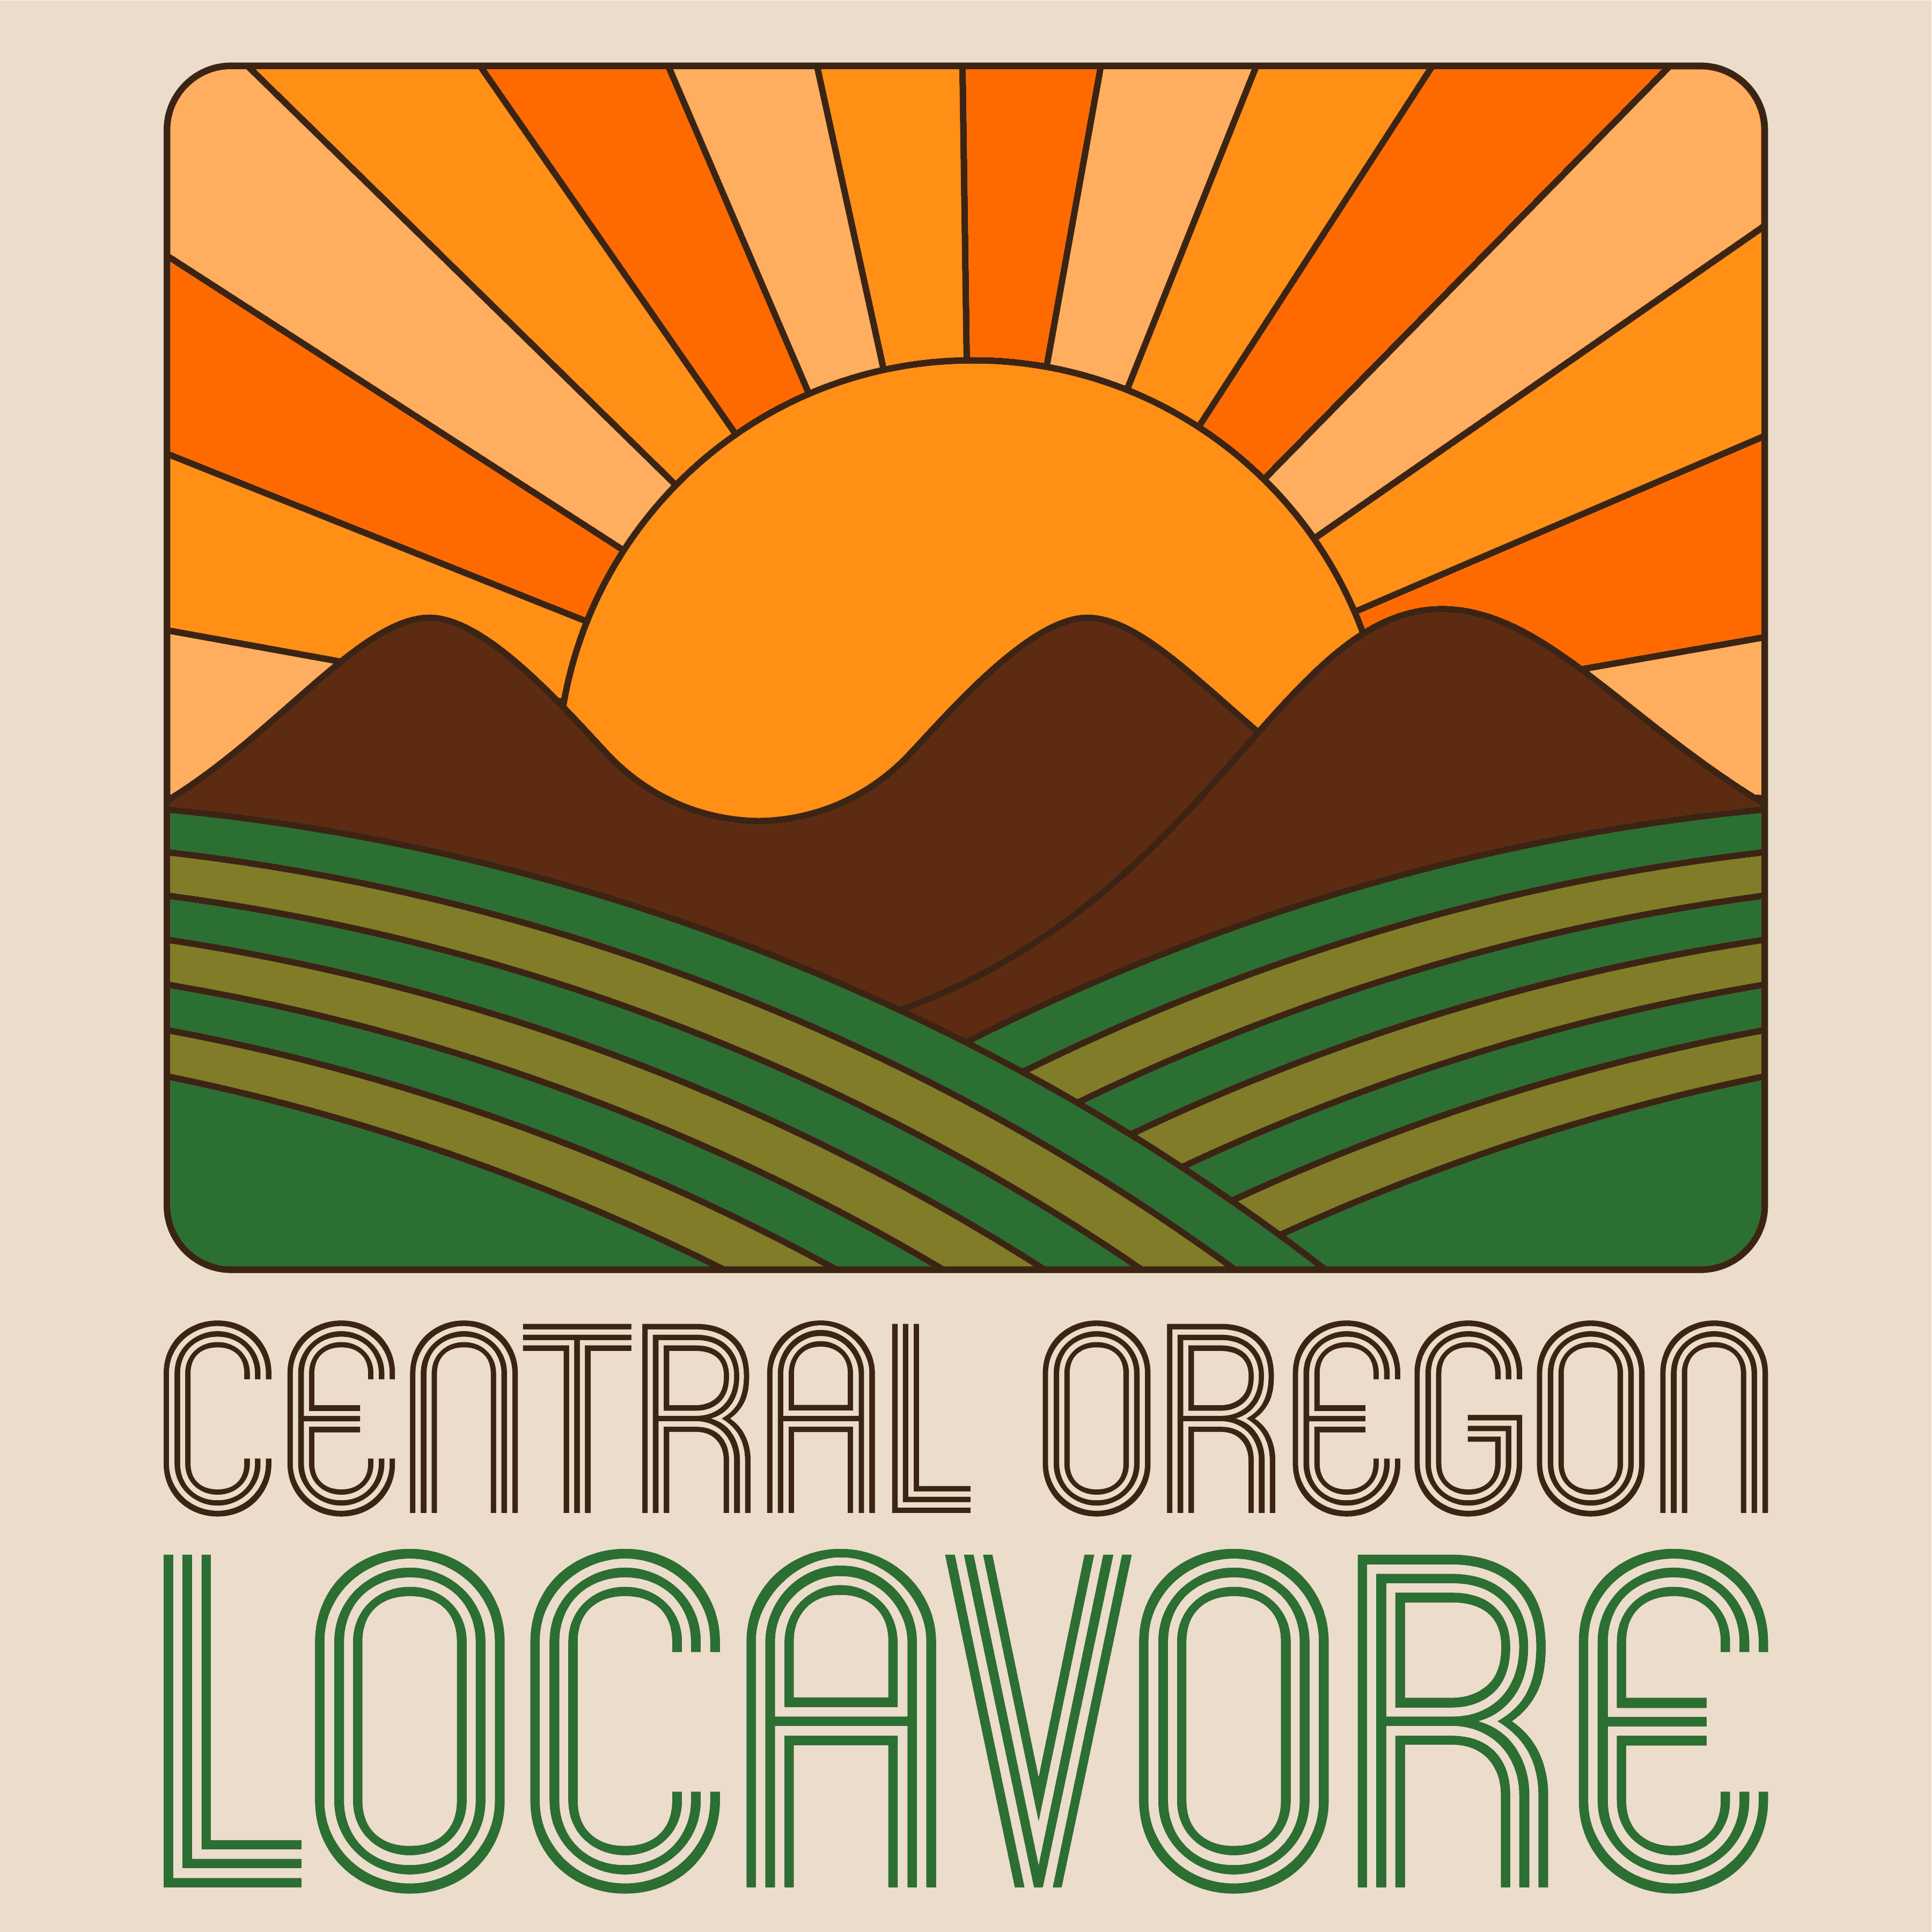 Central Oregon Locavore